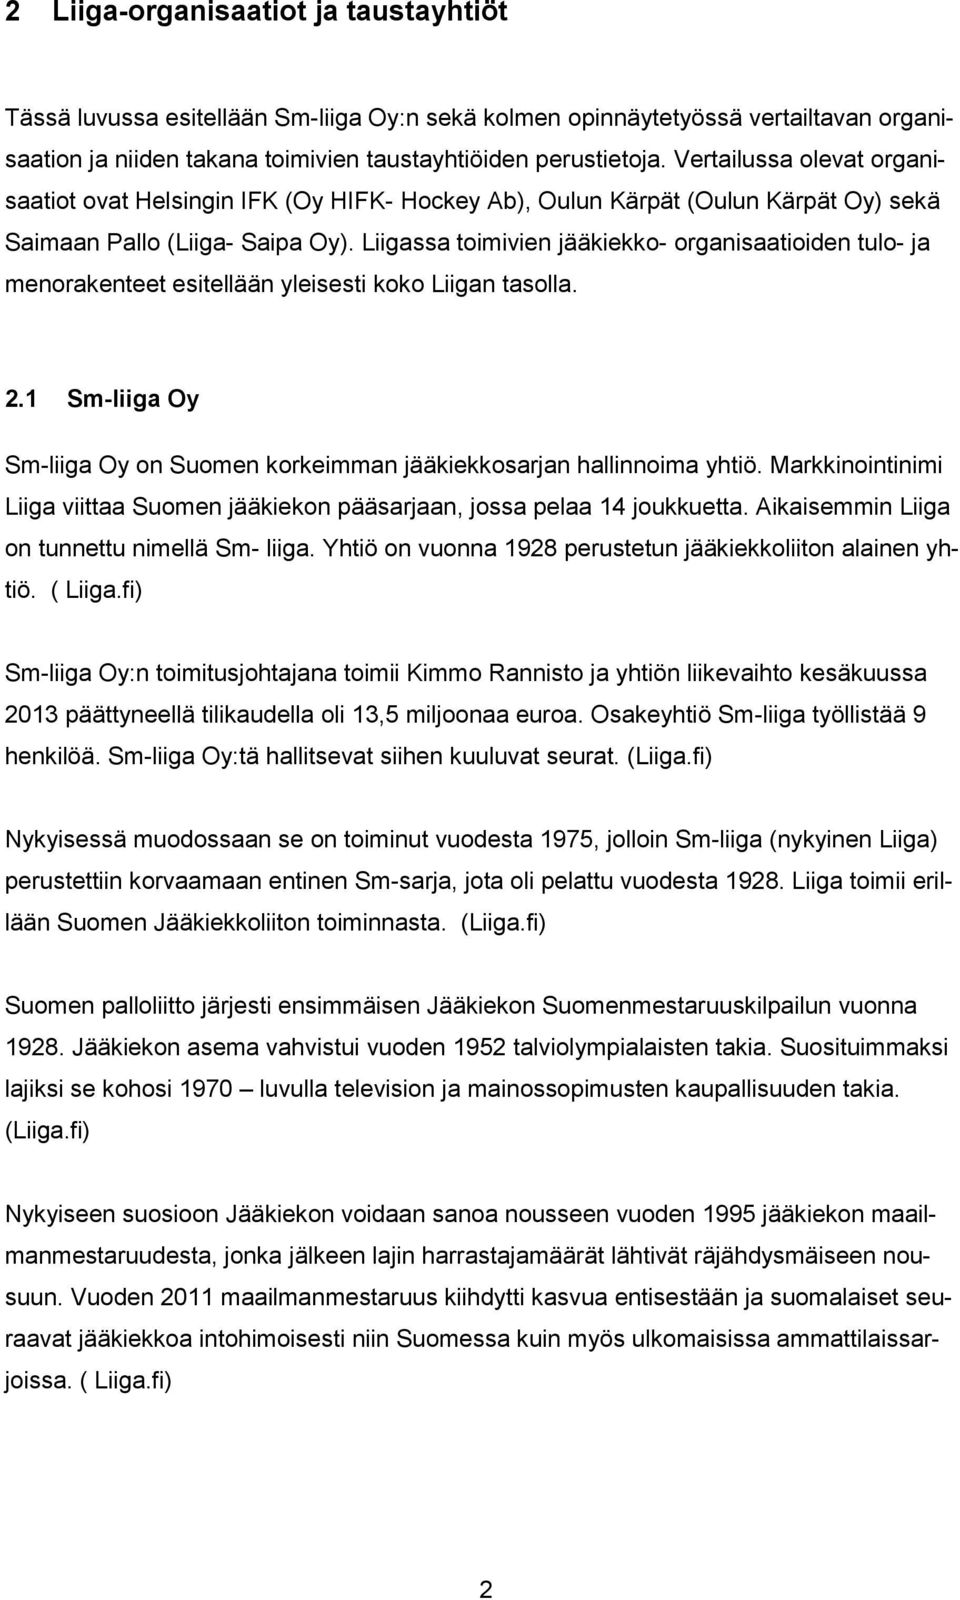 Liigassa toimivien jääkiekko- organisaatioiden tulo- ja menorakenteet esitellään yleisesti koko Liigan tasolla. 2.1 Sm-liiga Oy Sm-liiga Oy on Suomen korkeimman jääkiekkosarjan hallinnoima yhtiö.